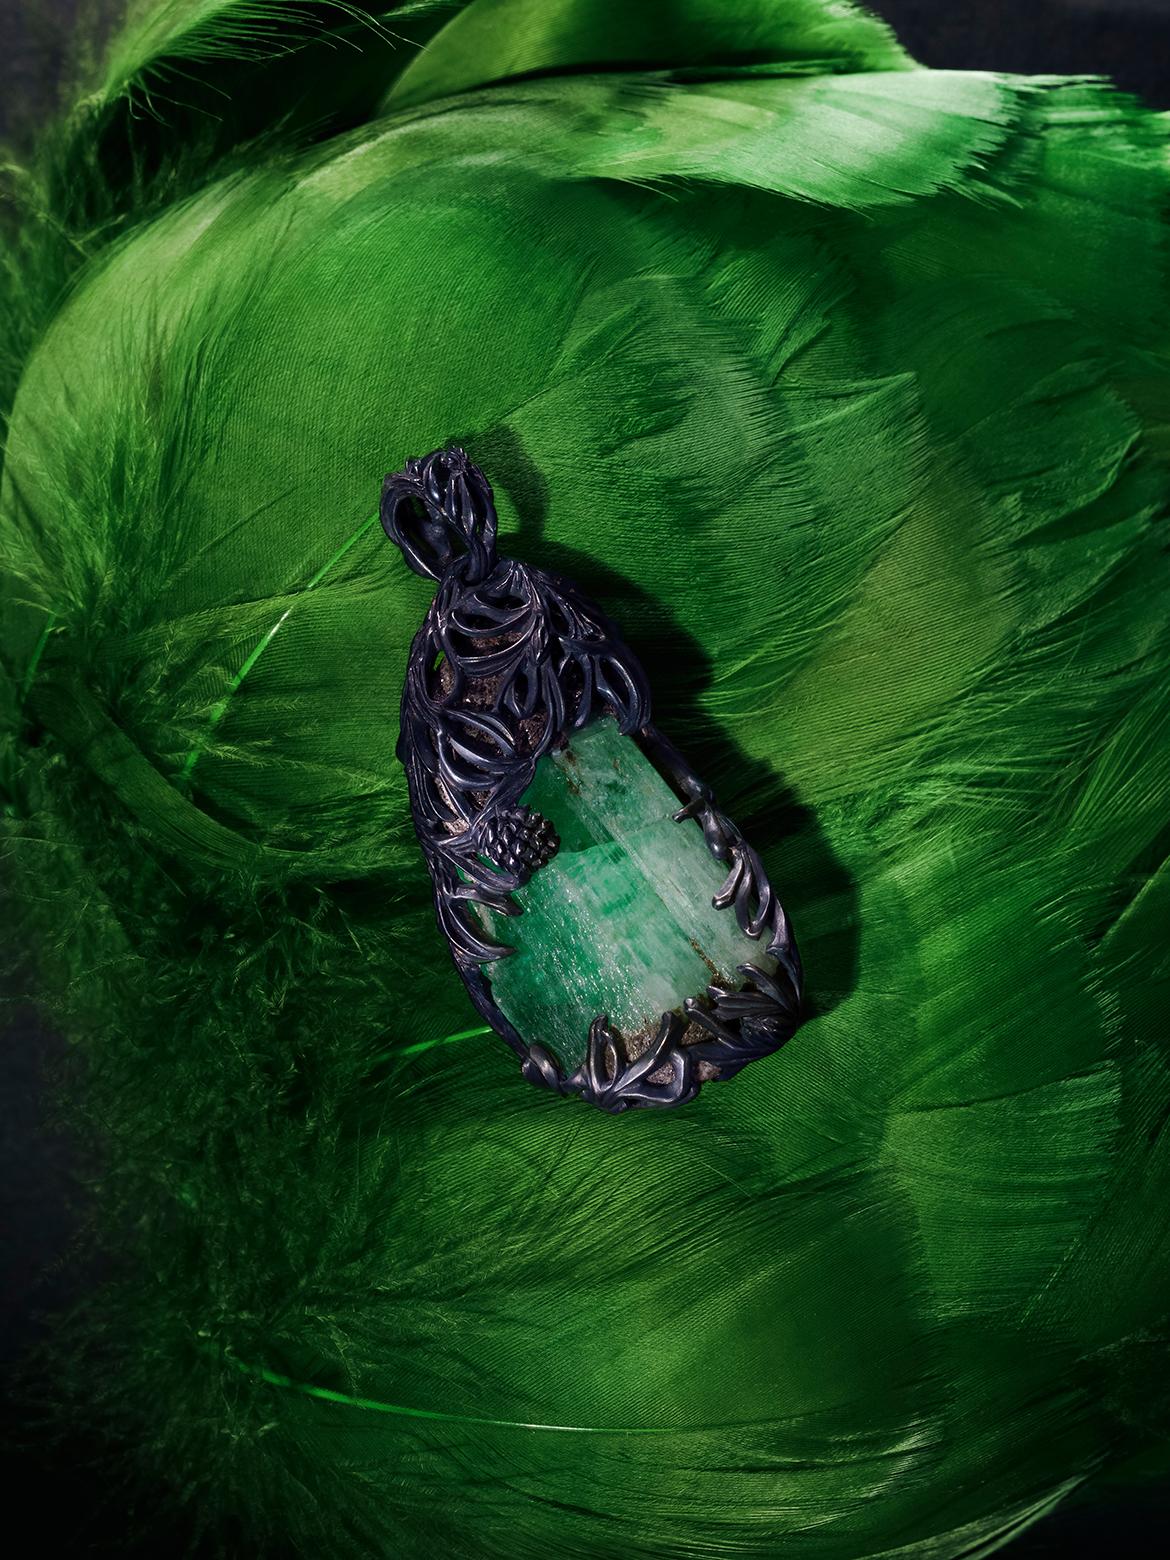 Beidseitige Pine-Halskette mit natürlichem rohem Smaragd (grüner Beryll) in patiniertem Silber
Smaragd Herkunft - Uralgebirge
Abmessungen des Smaragdkristalls - 16 х 25 х 38 mm / 0,63 x 0,98 x 1,5 in
Gewicht des Smaragds - 74 Karat
Gewicht der